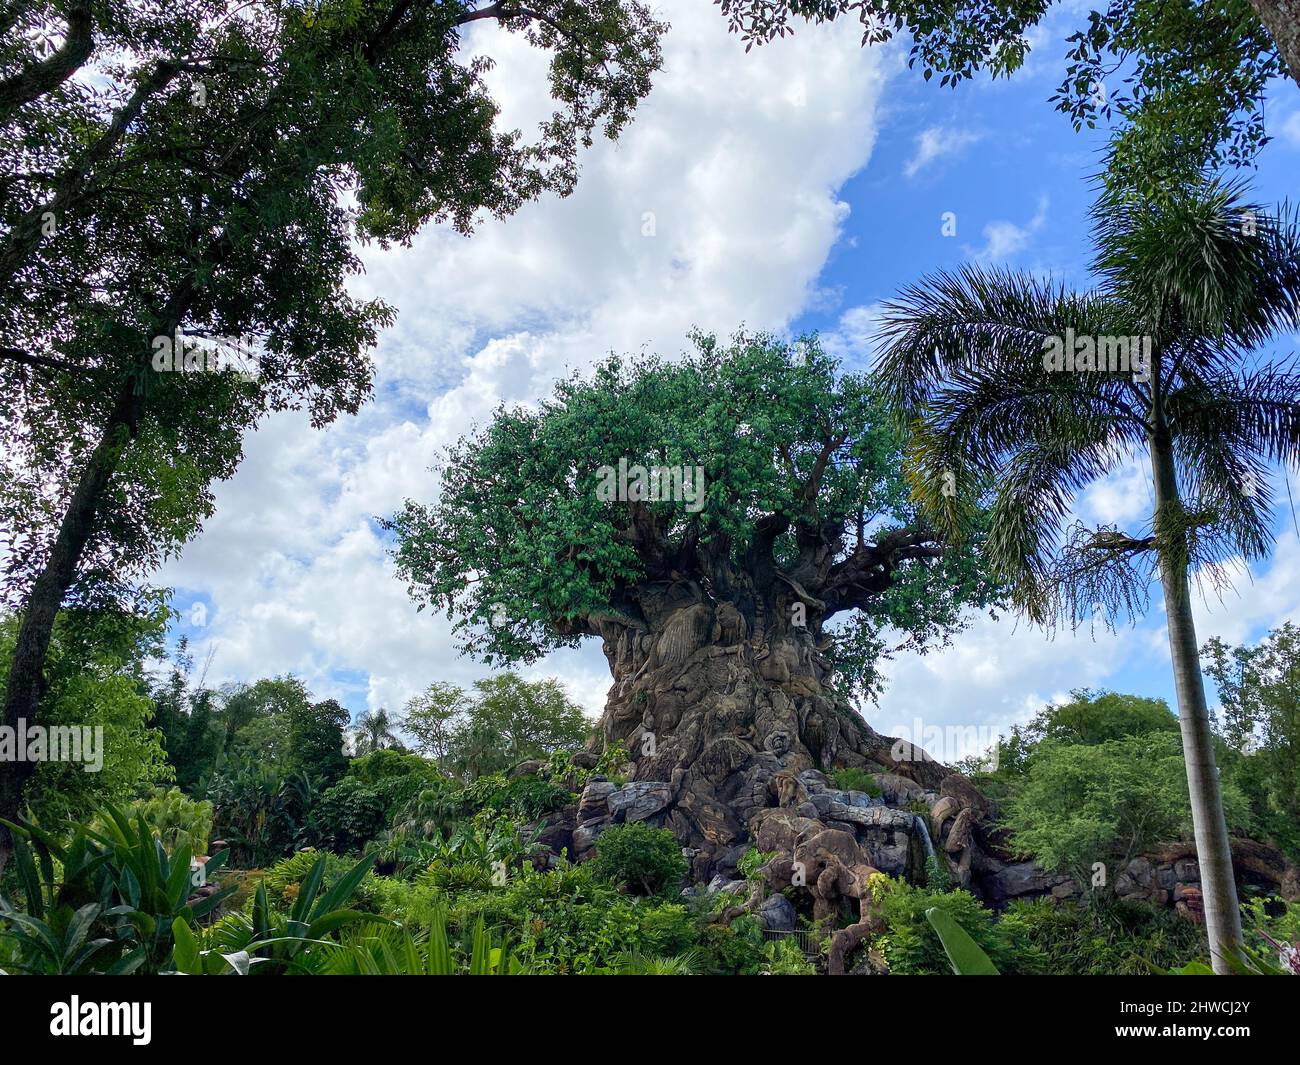 Orlando, FL USA - 18. Juli 2020: Der Baum des Lebens im Animal Kingdom in der Walt Disney World in Orlando, Florida. Stockfoto